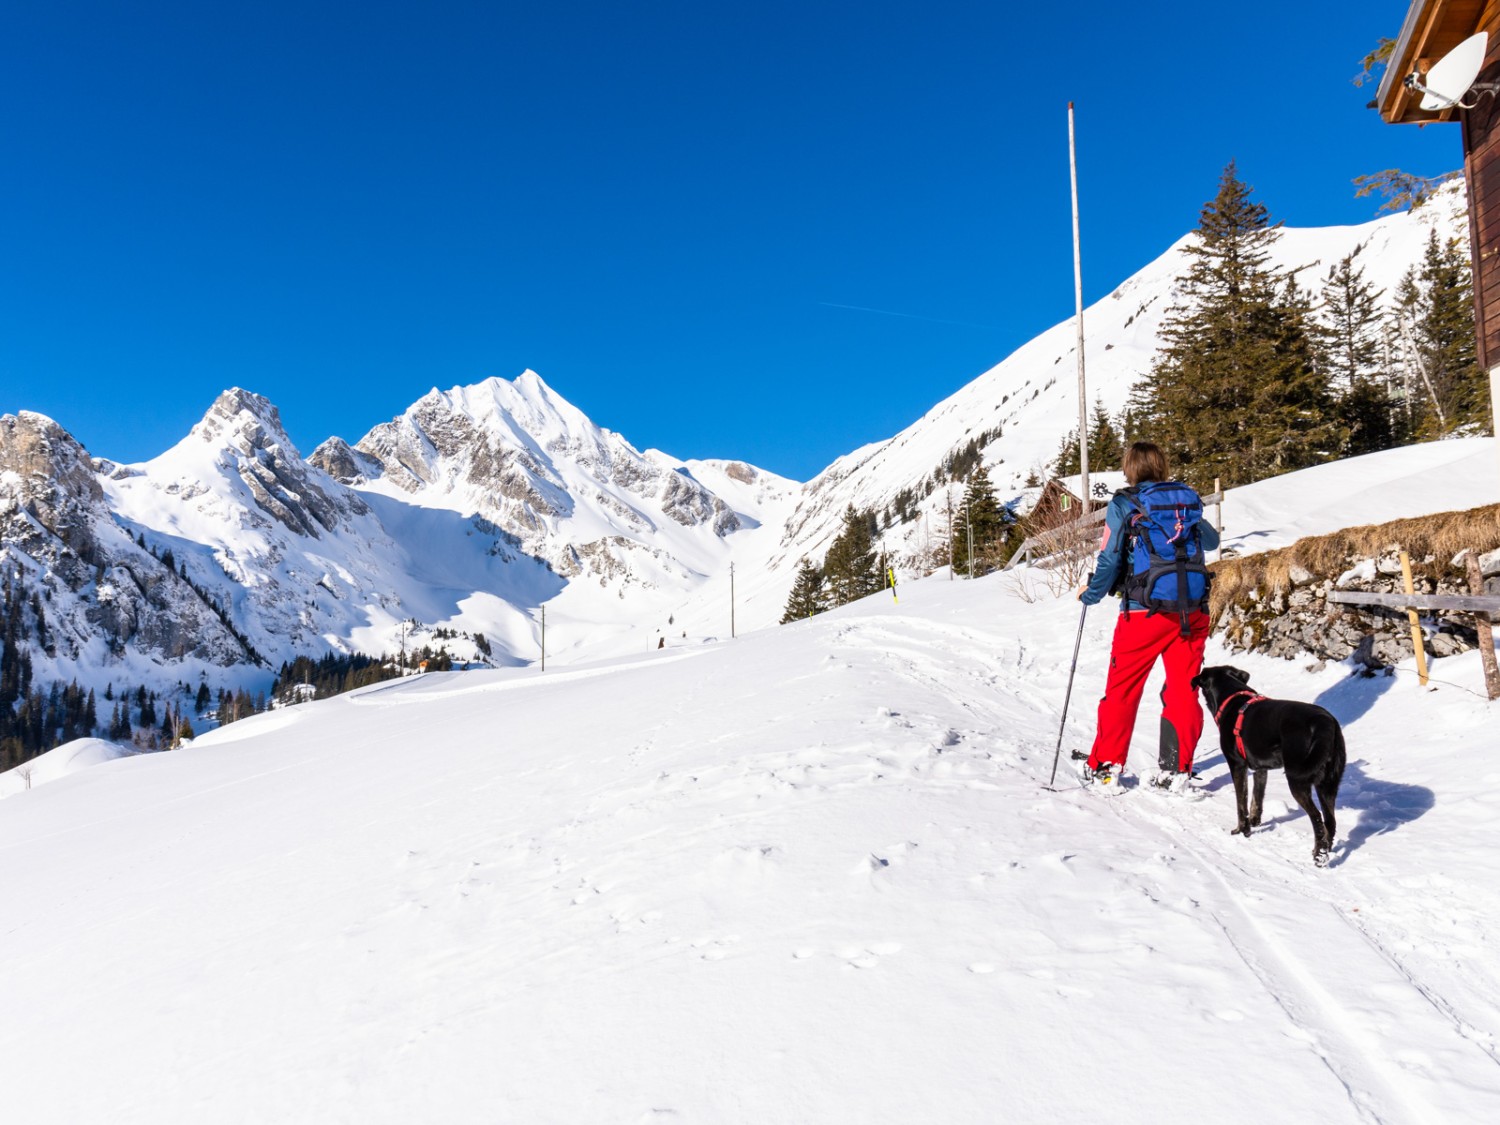 Le tour est bientôt fini: d’ici, on entend déjà l’activité fourmillante du petit domaine skiable. Photo: Franz Ulrich